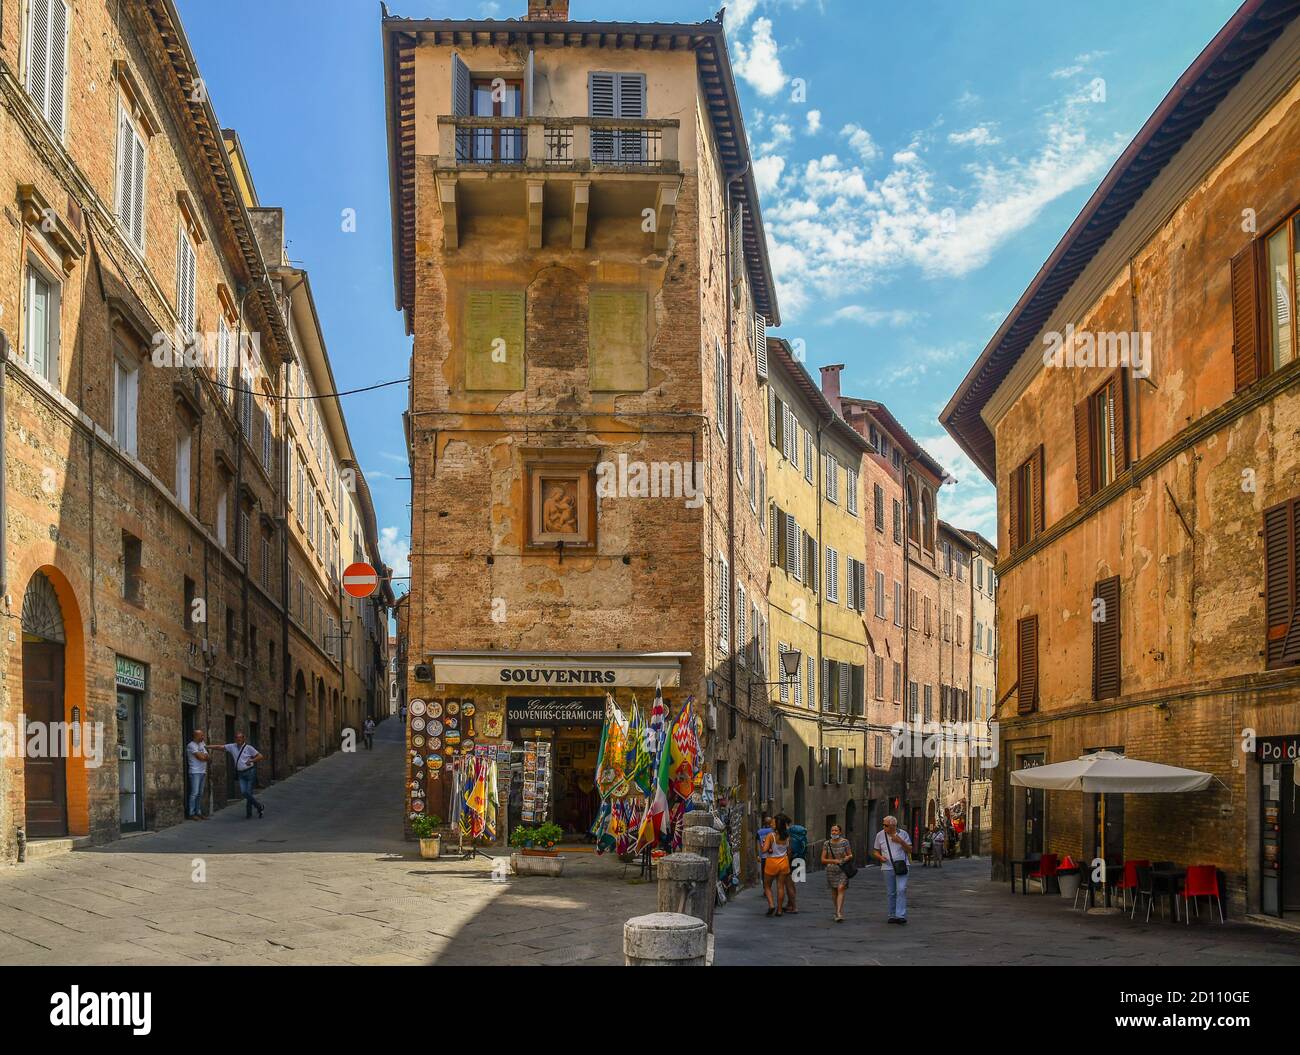 Aperçu du coin entre la via del Paradiso (à gauche) et la via dell'Accademia (à droite) dans le centre historique de Sienne, UNESCO W.H. Site, Toscane, Italie Banque D'Images